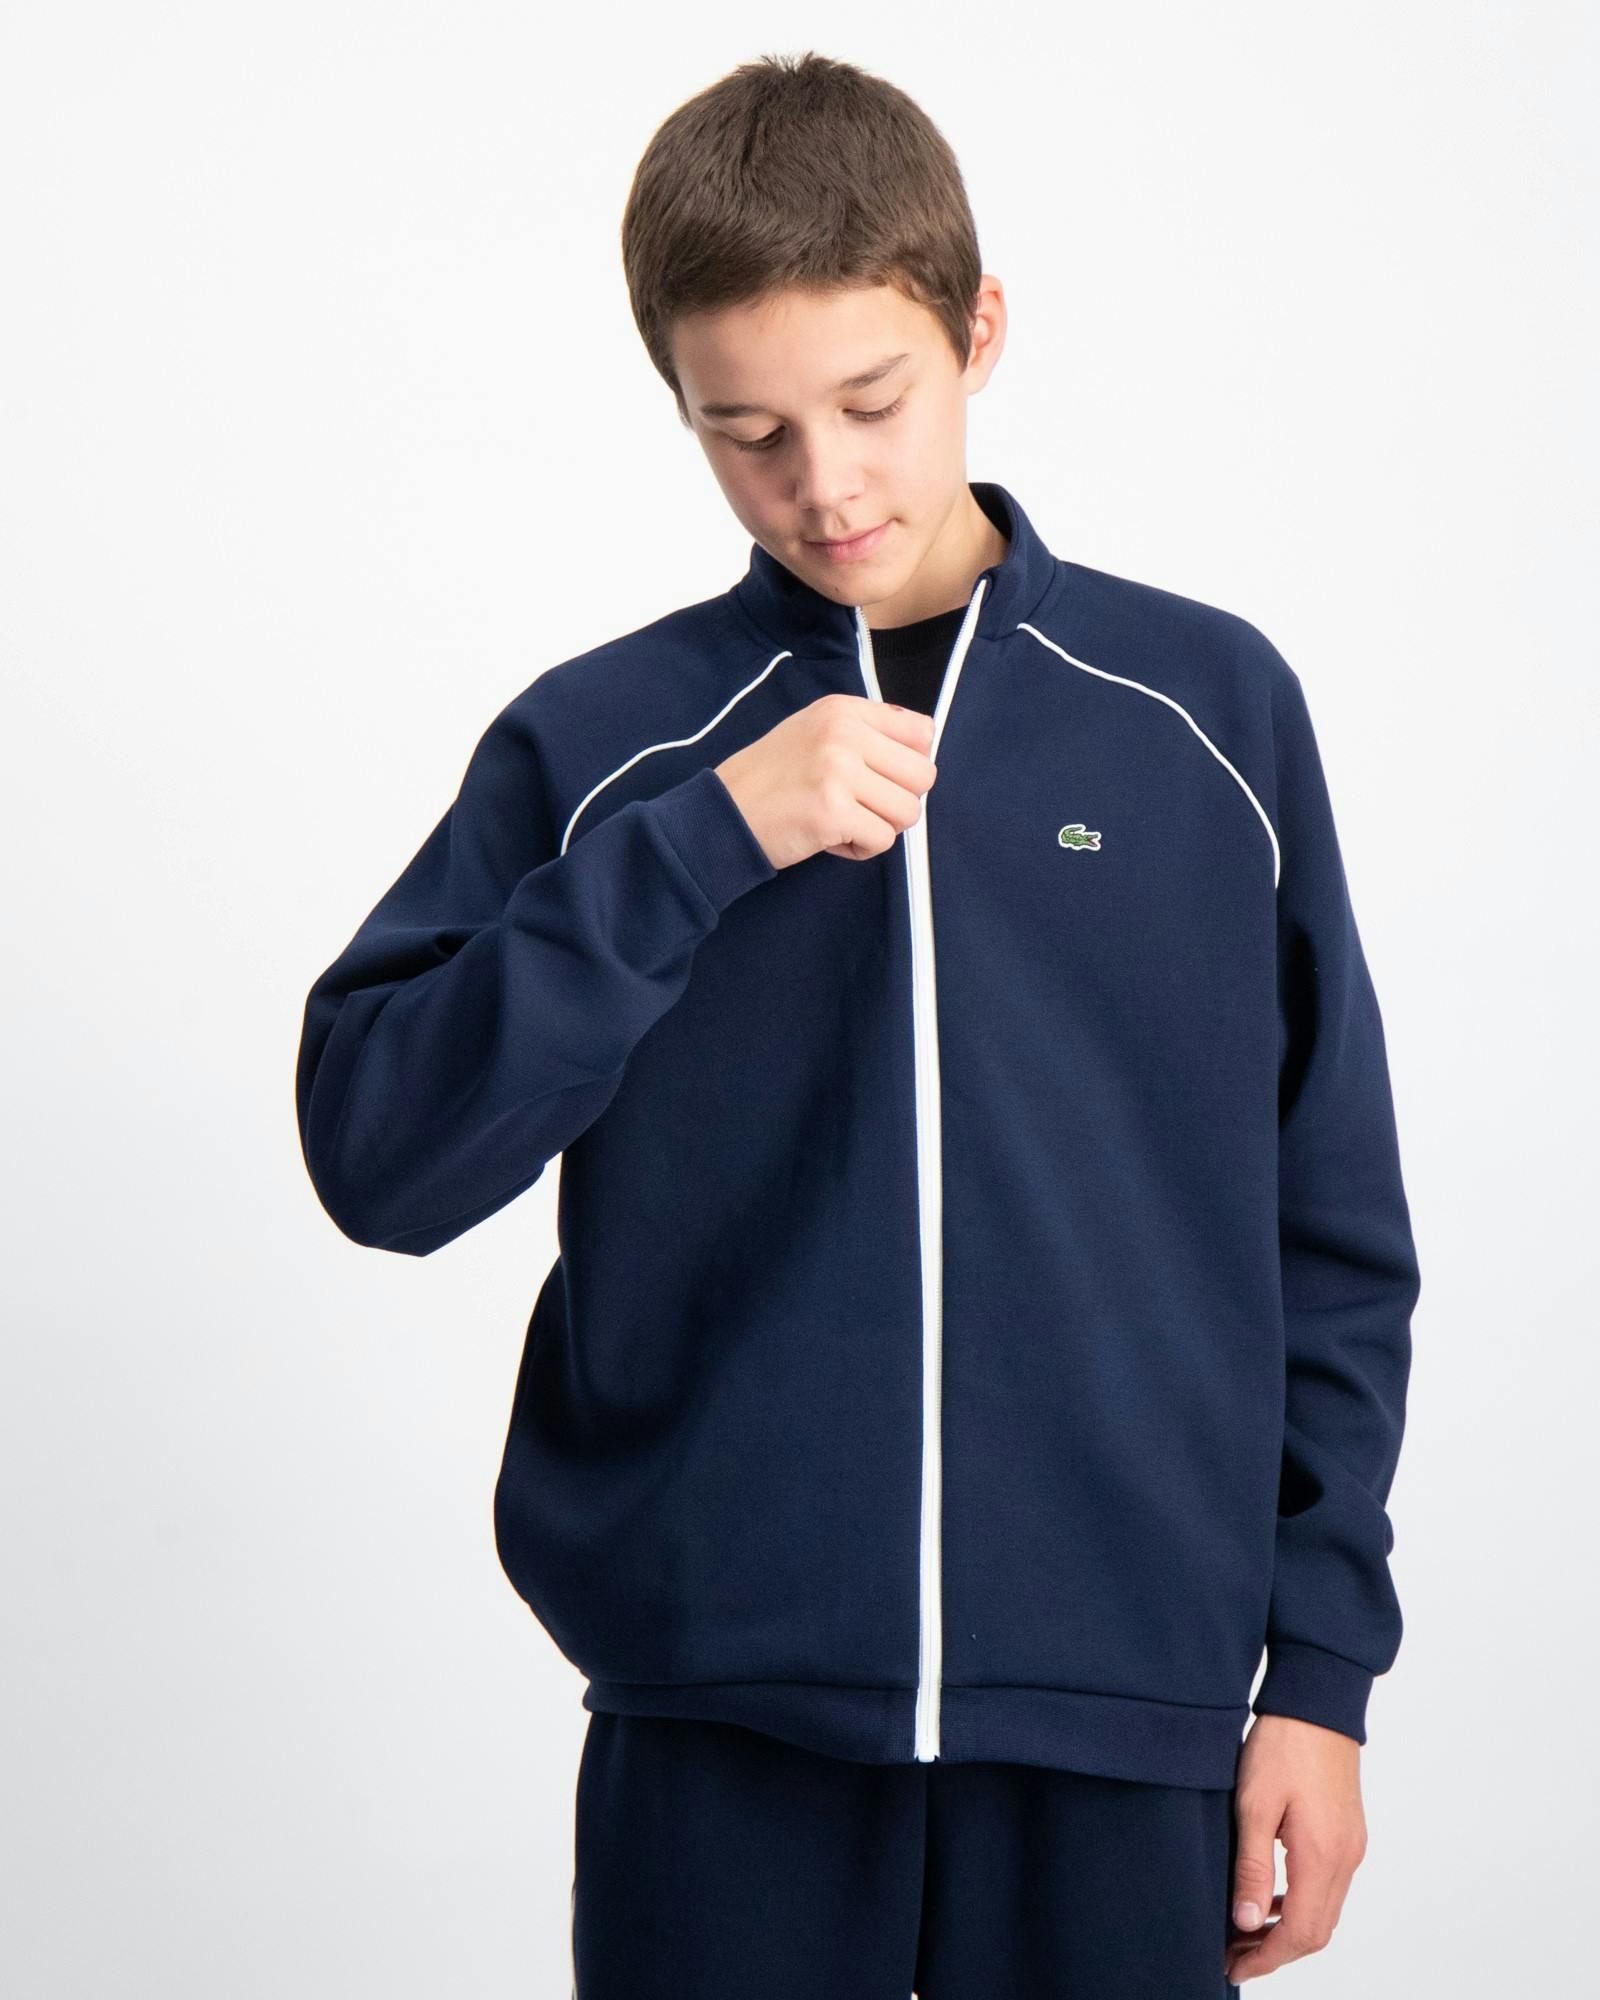 Lacoste Pullover für Kinder und Jugendliche | Kids Brand Store